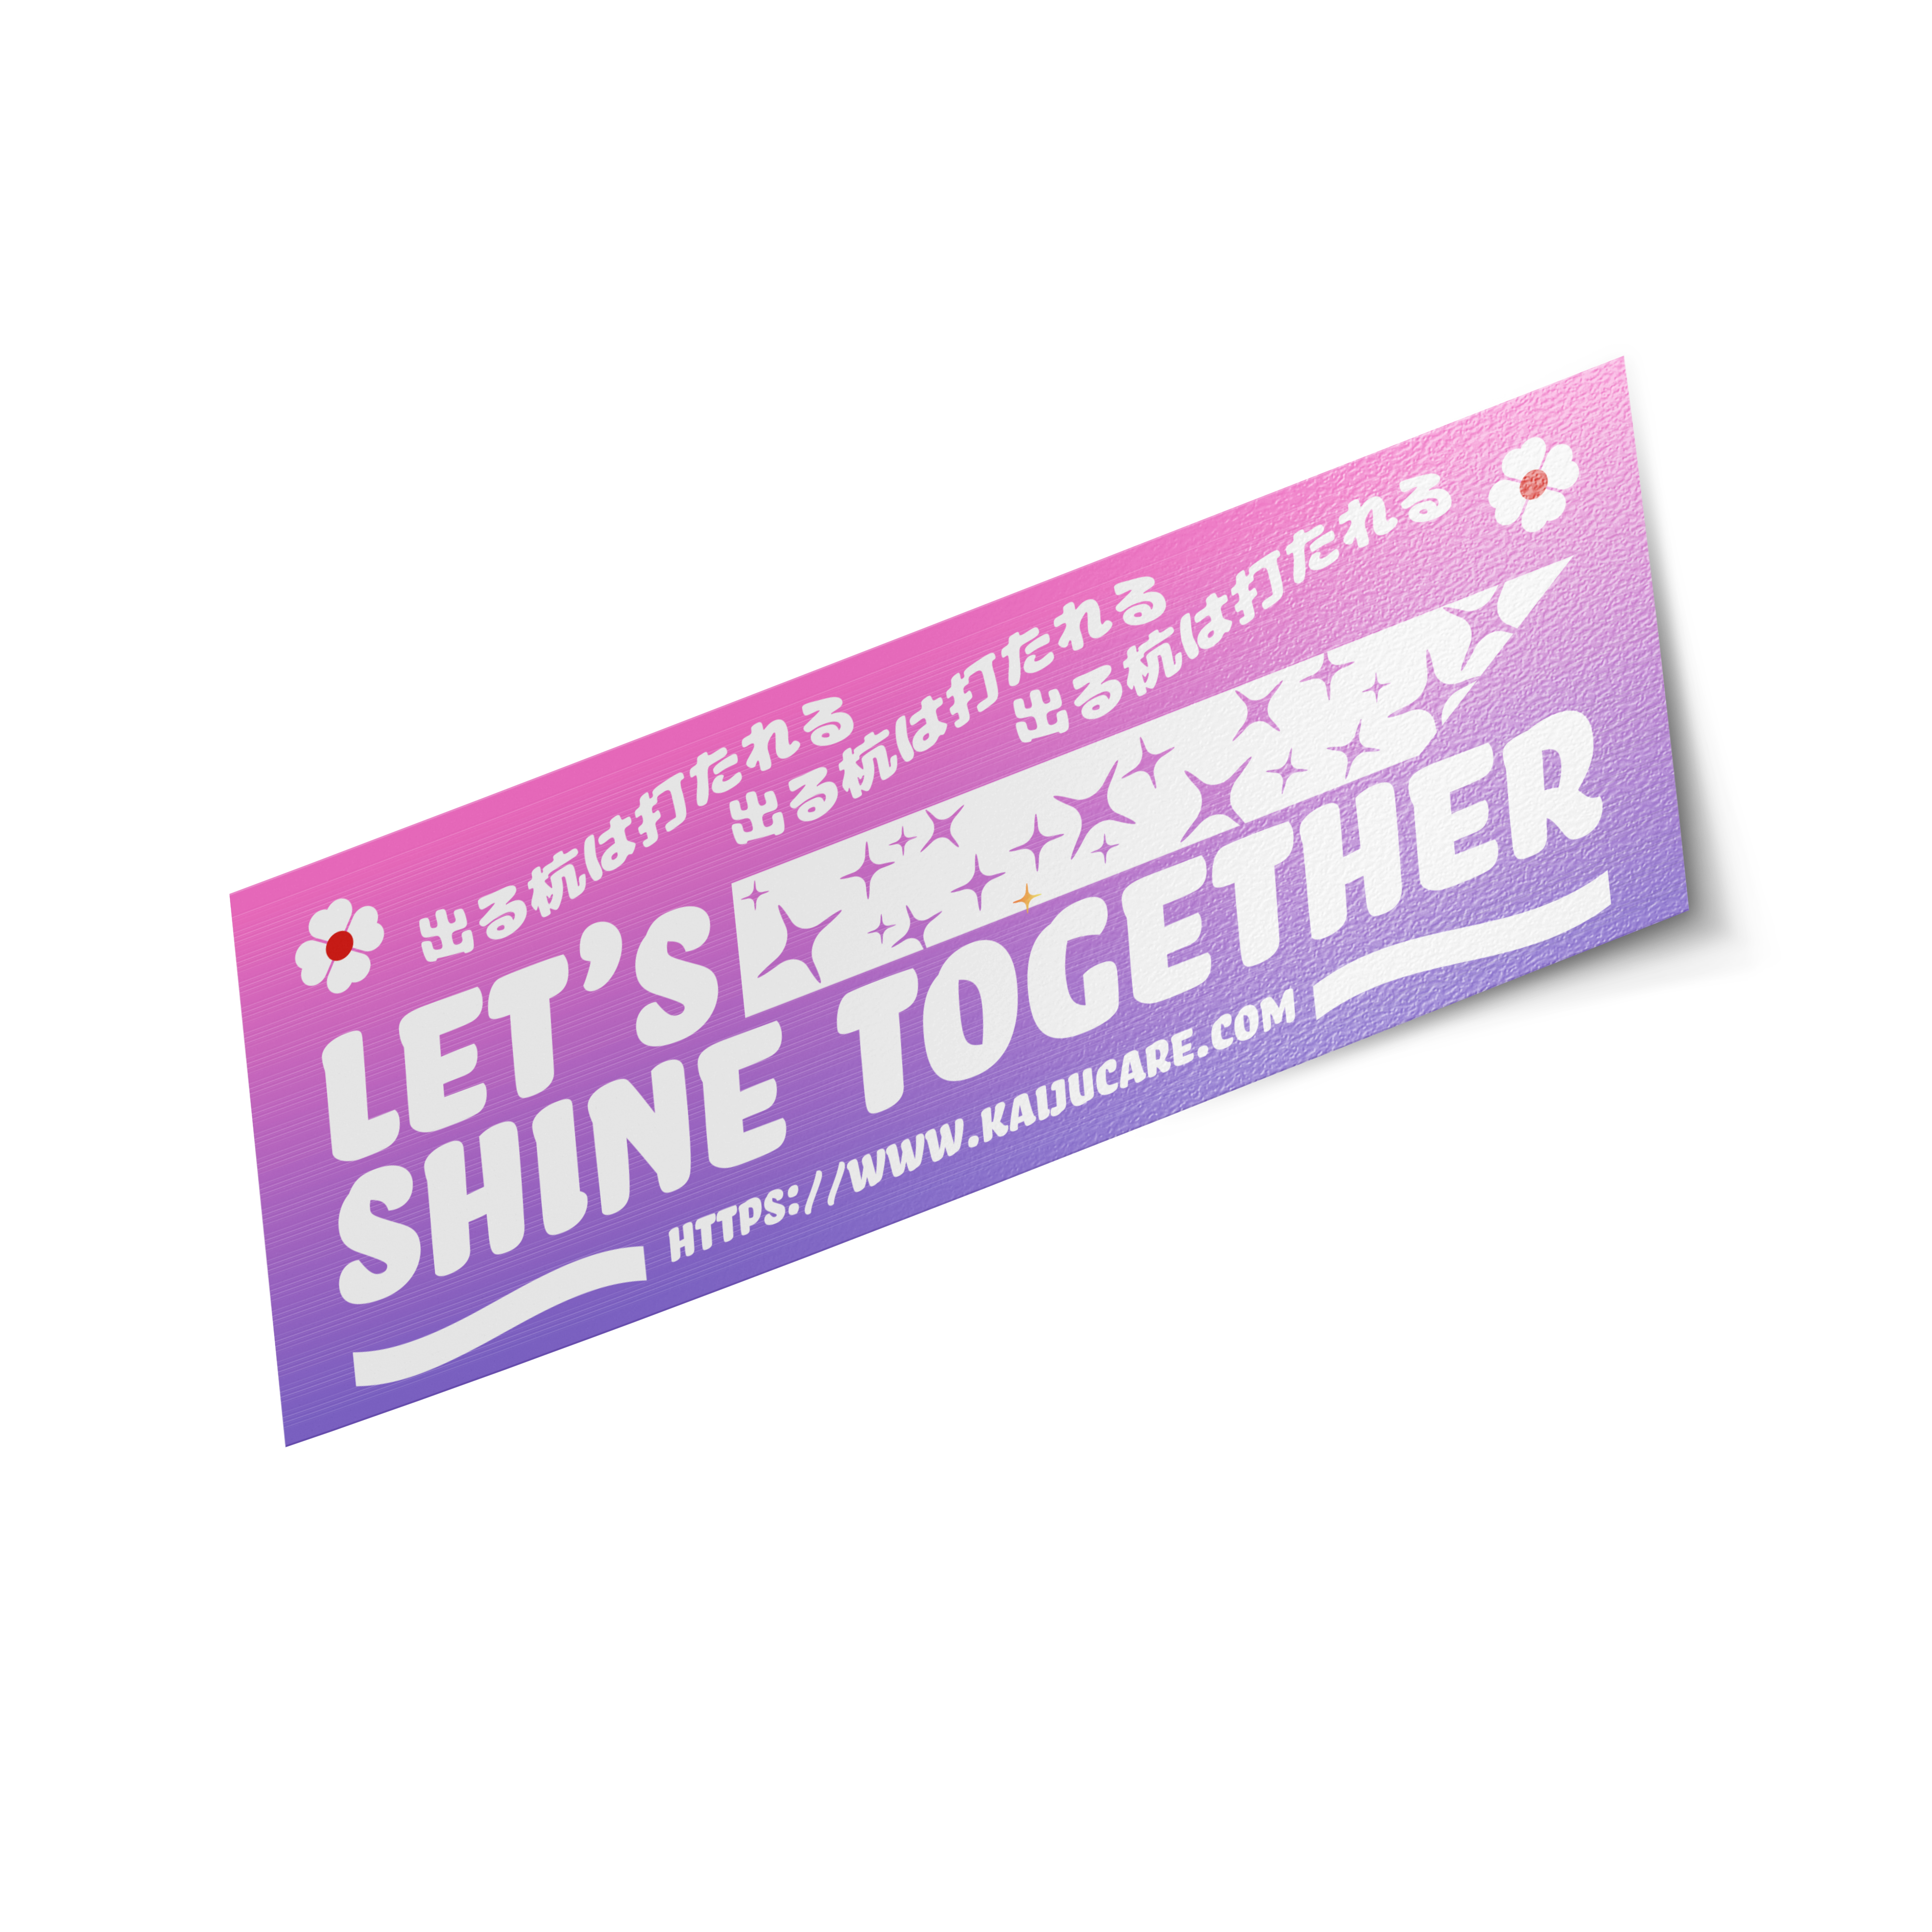 Lets Shine together! - Purple